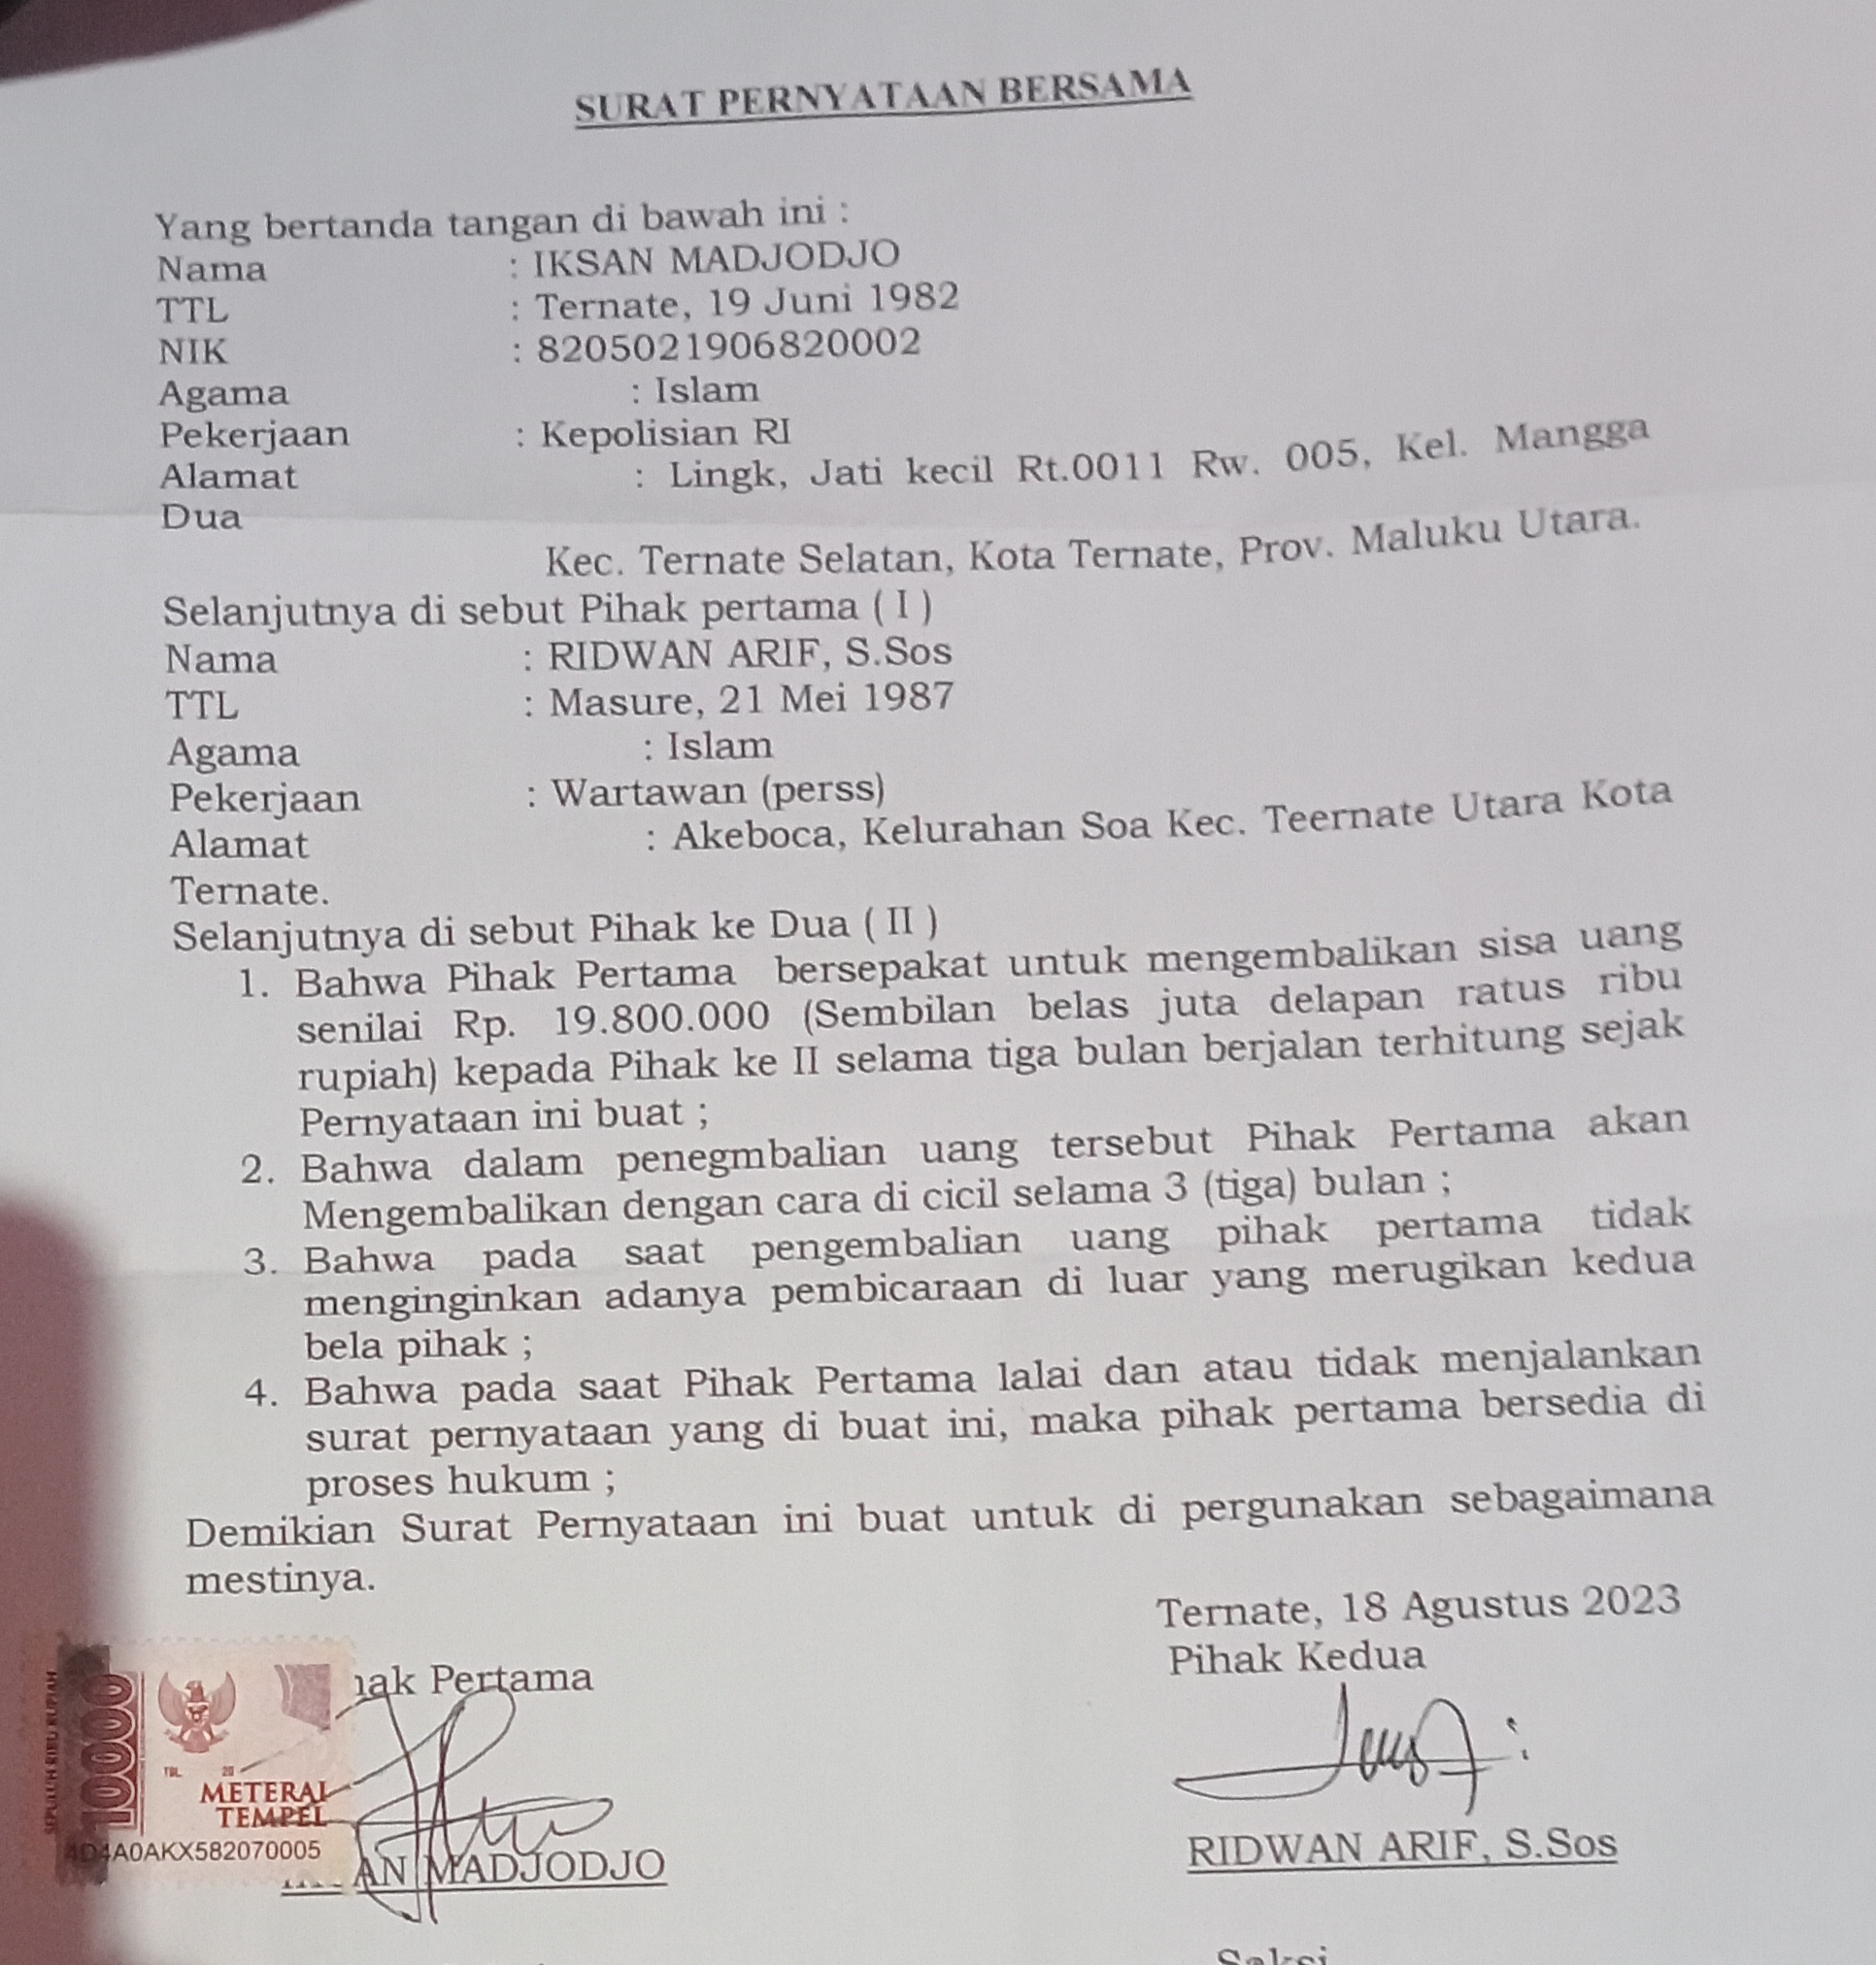 Surat pernyataan kedua yang ditanda tangani oknum polisi Iksan Madjojo melalui kuasa hukumnya untuk melakukan pengembalian uang milik Ridwan.